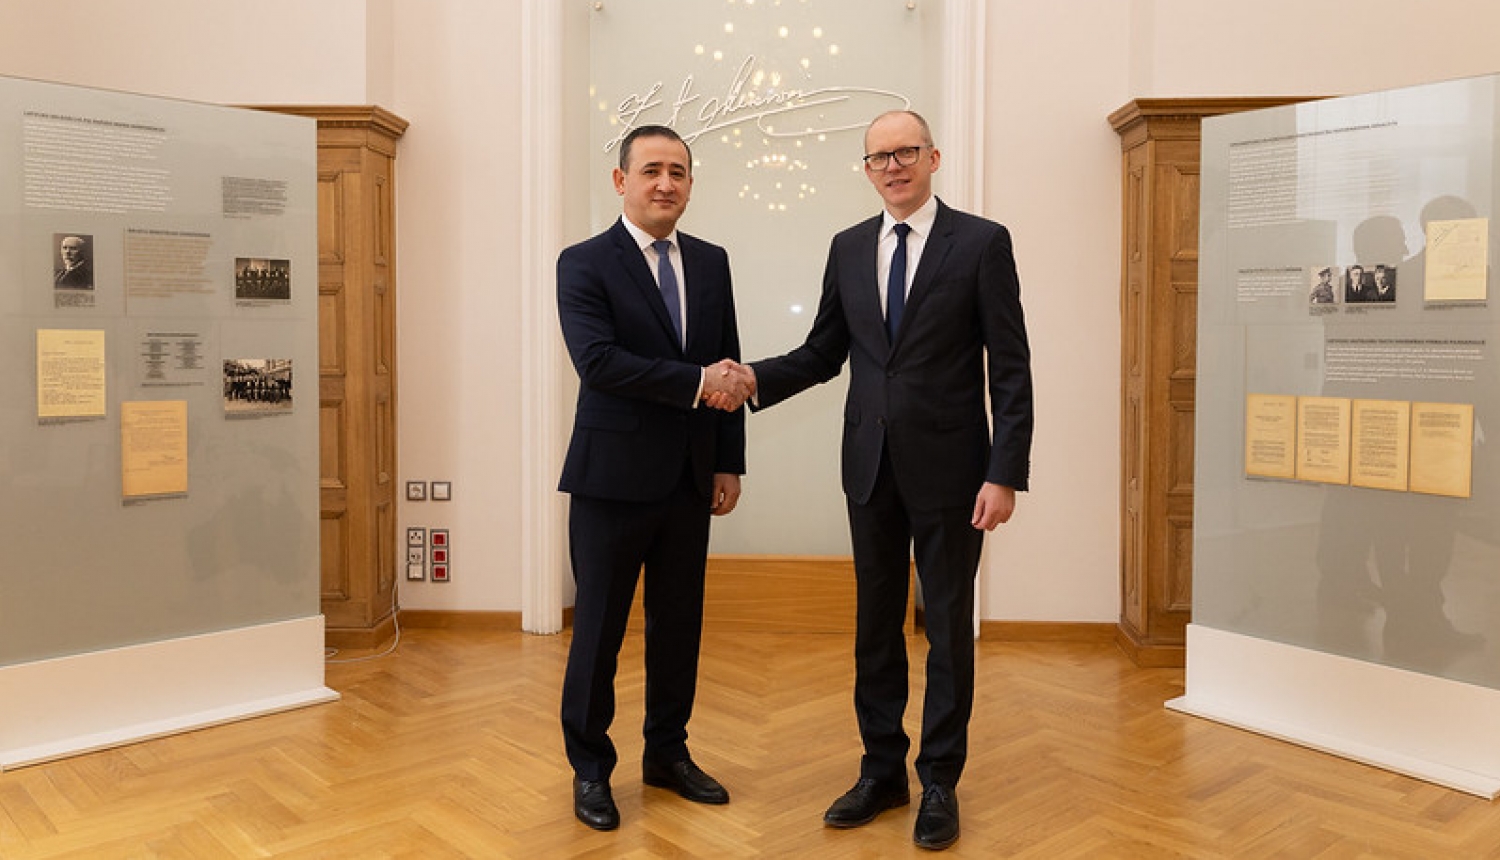 Ārlietu ministrijas valsts sekretārs Andris Pelšs iepazīšanās vizītē pieņēma nākamo Uzbekistānas vēstnieku Latvijā Timuru Rahmanovu (Timur Rakhmanov)